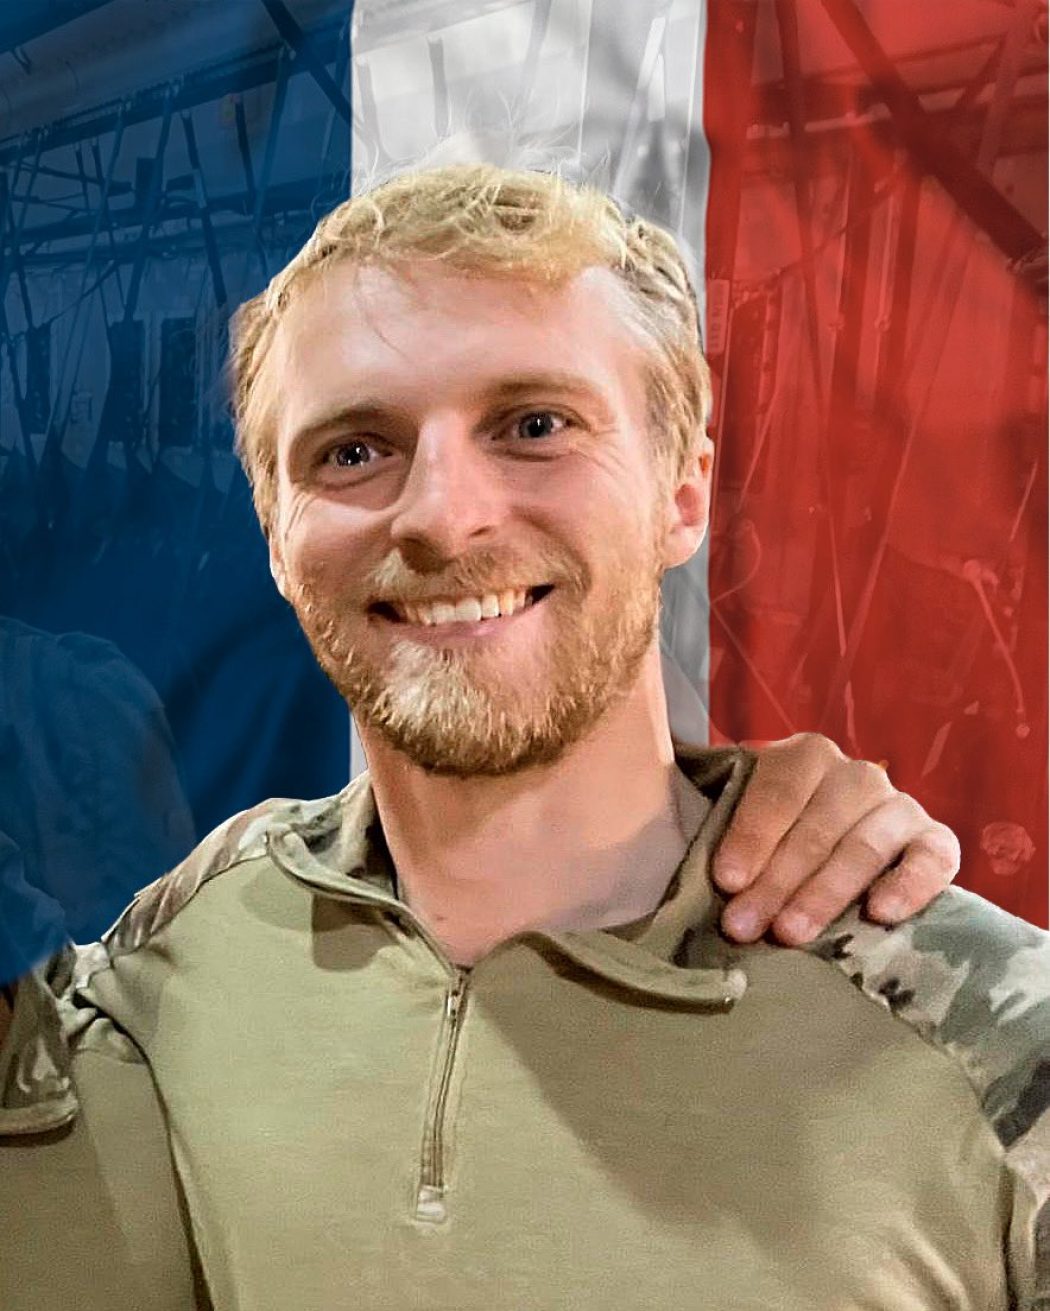 Mort d’un soldat français en Irak. RIP